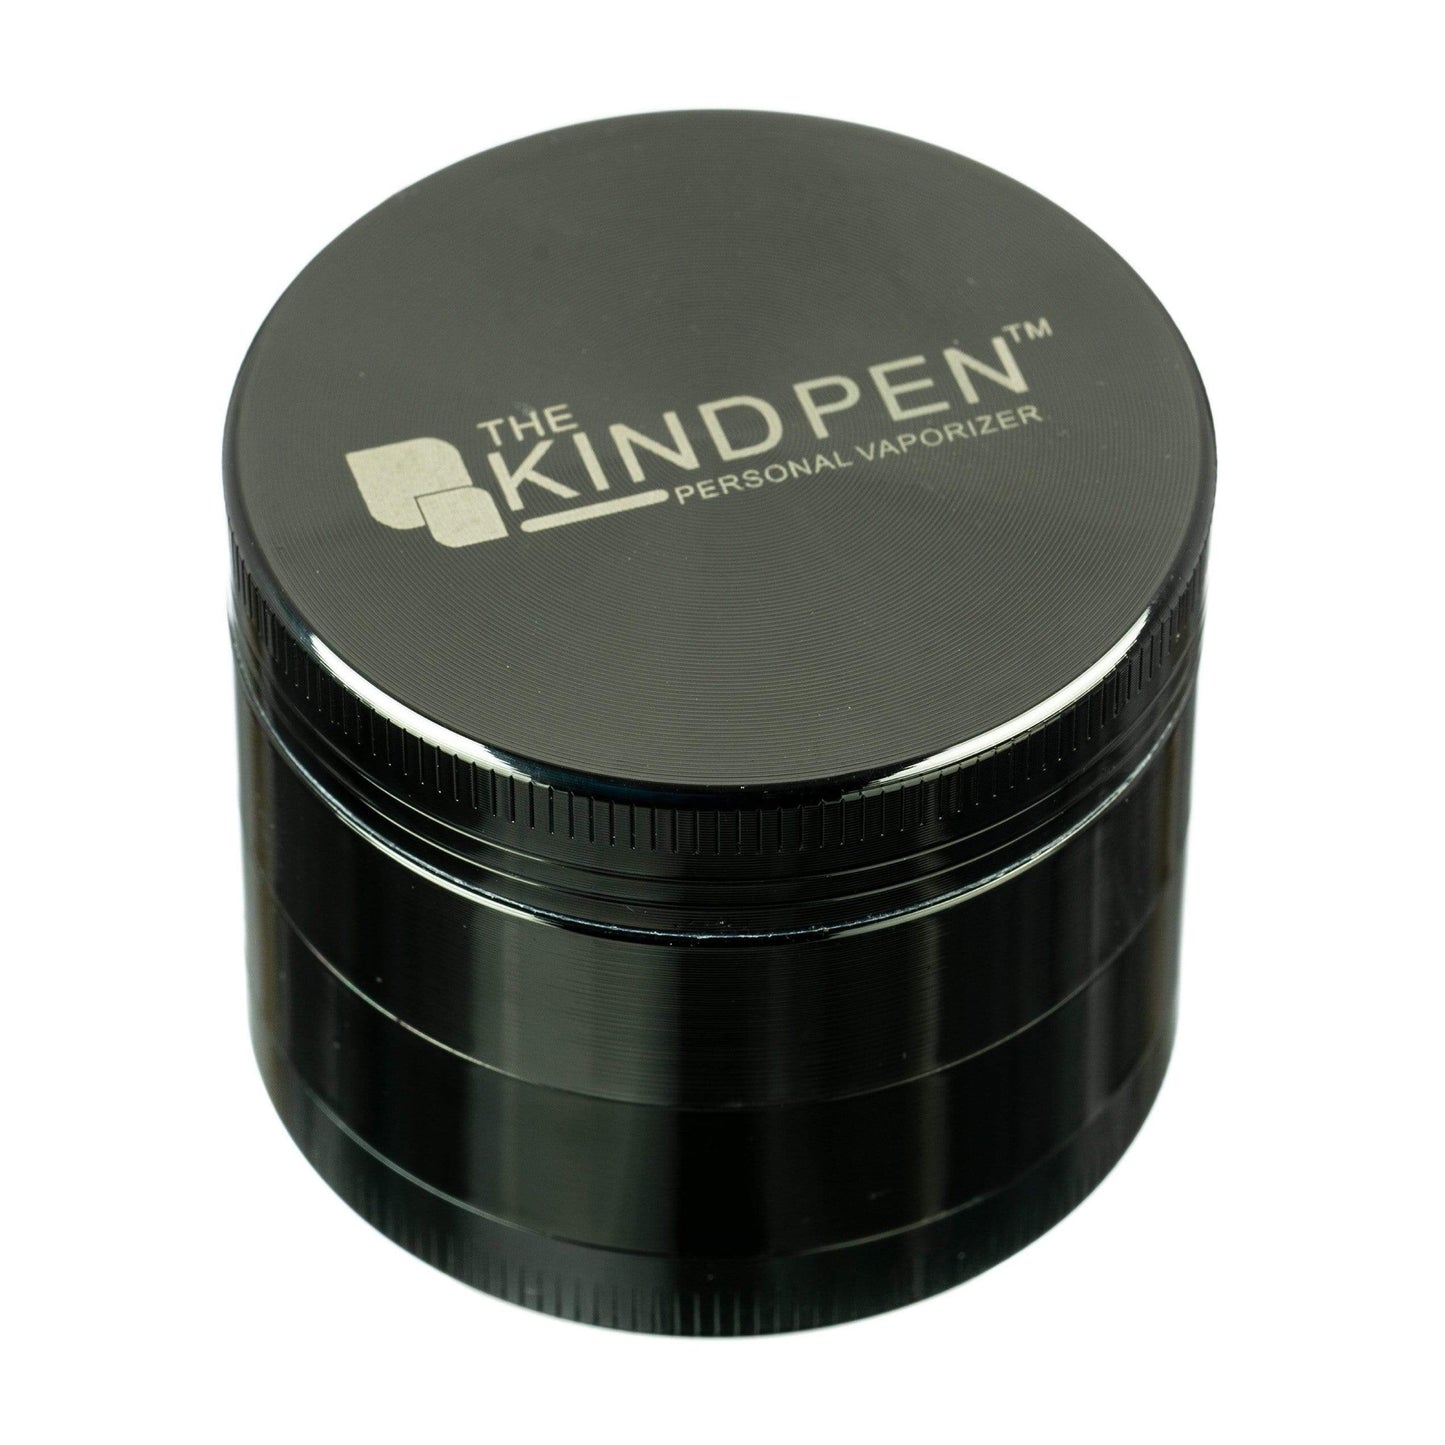 Kind Pen Tri-Level Herb Grinder by The Kind Pen | Mission Dispensary